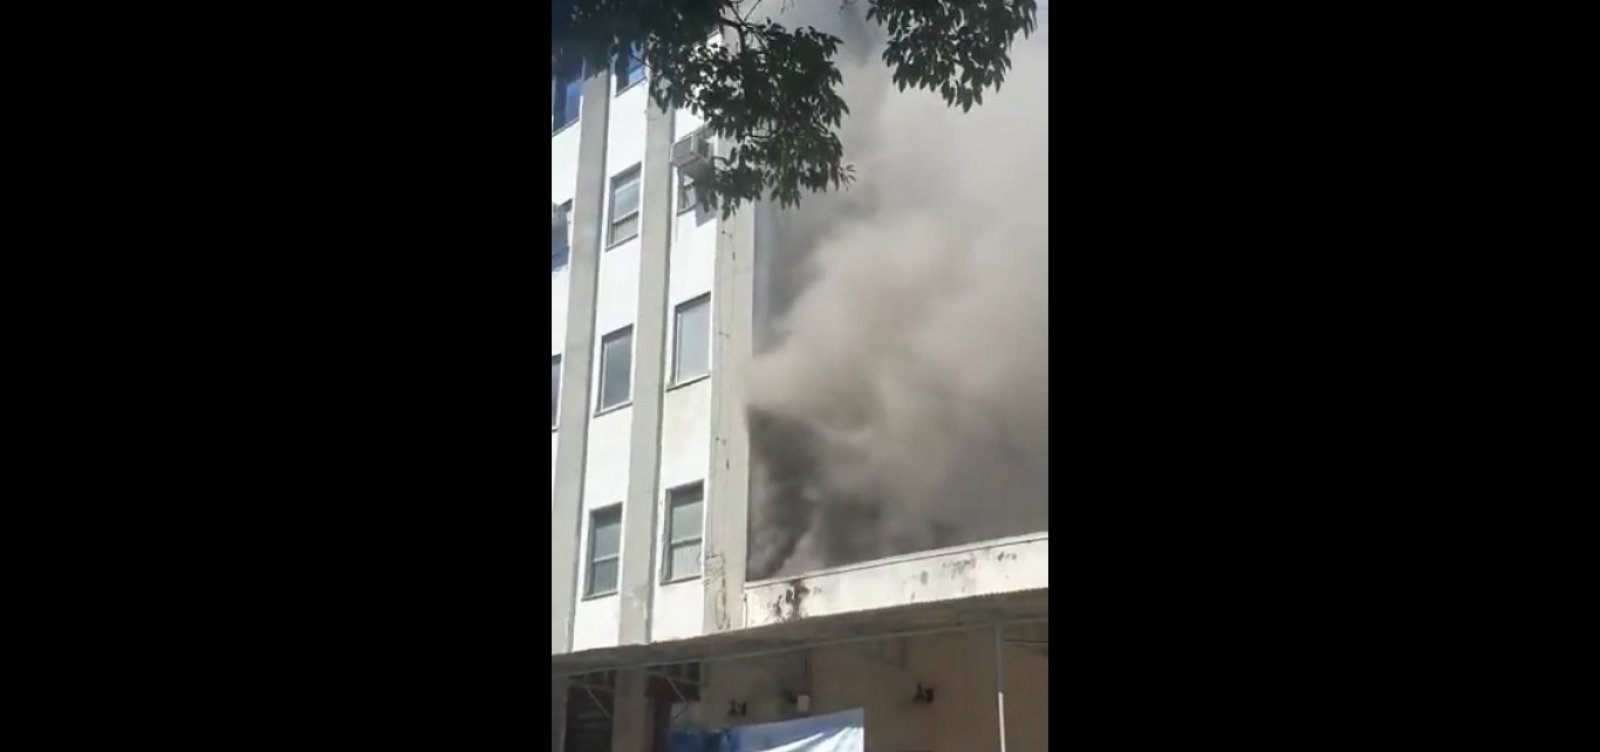 Incêndio atinge hospital federal na zona norte do Rio de Janeiro